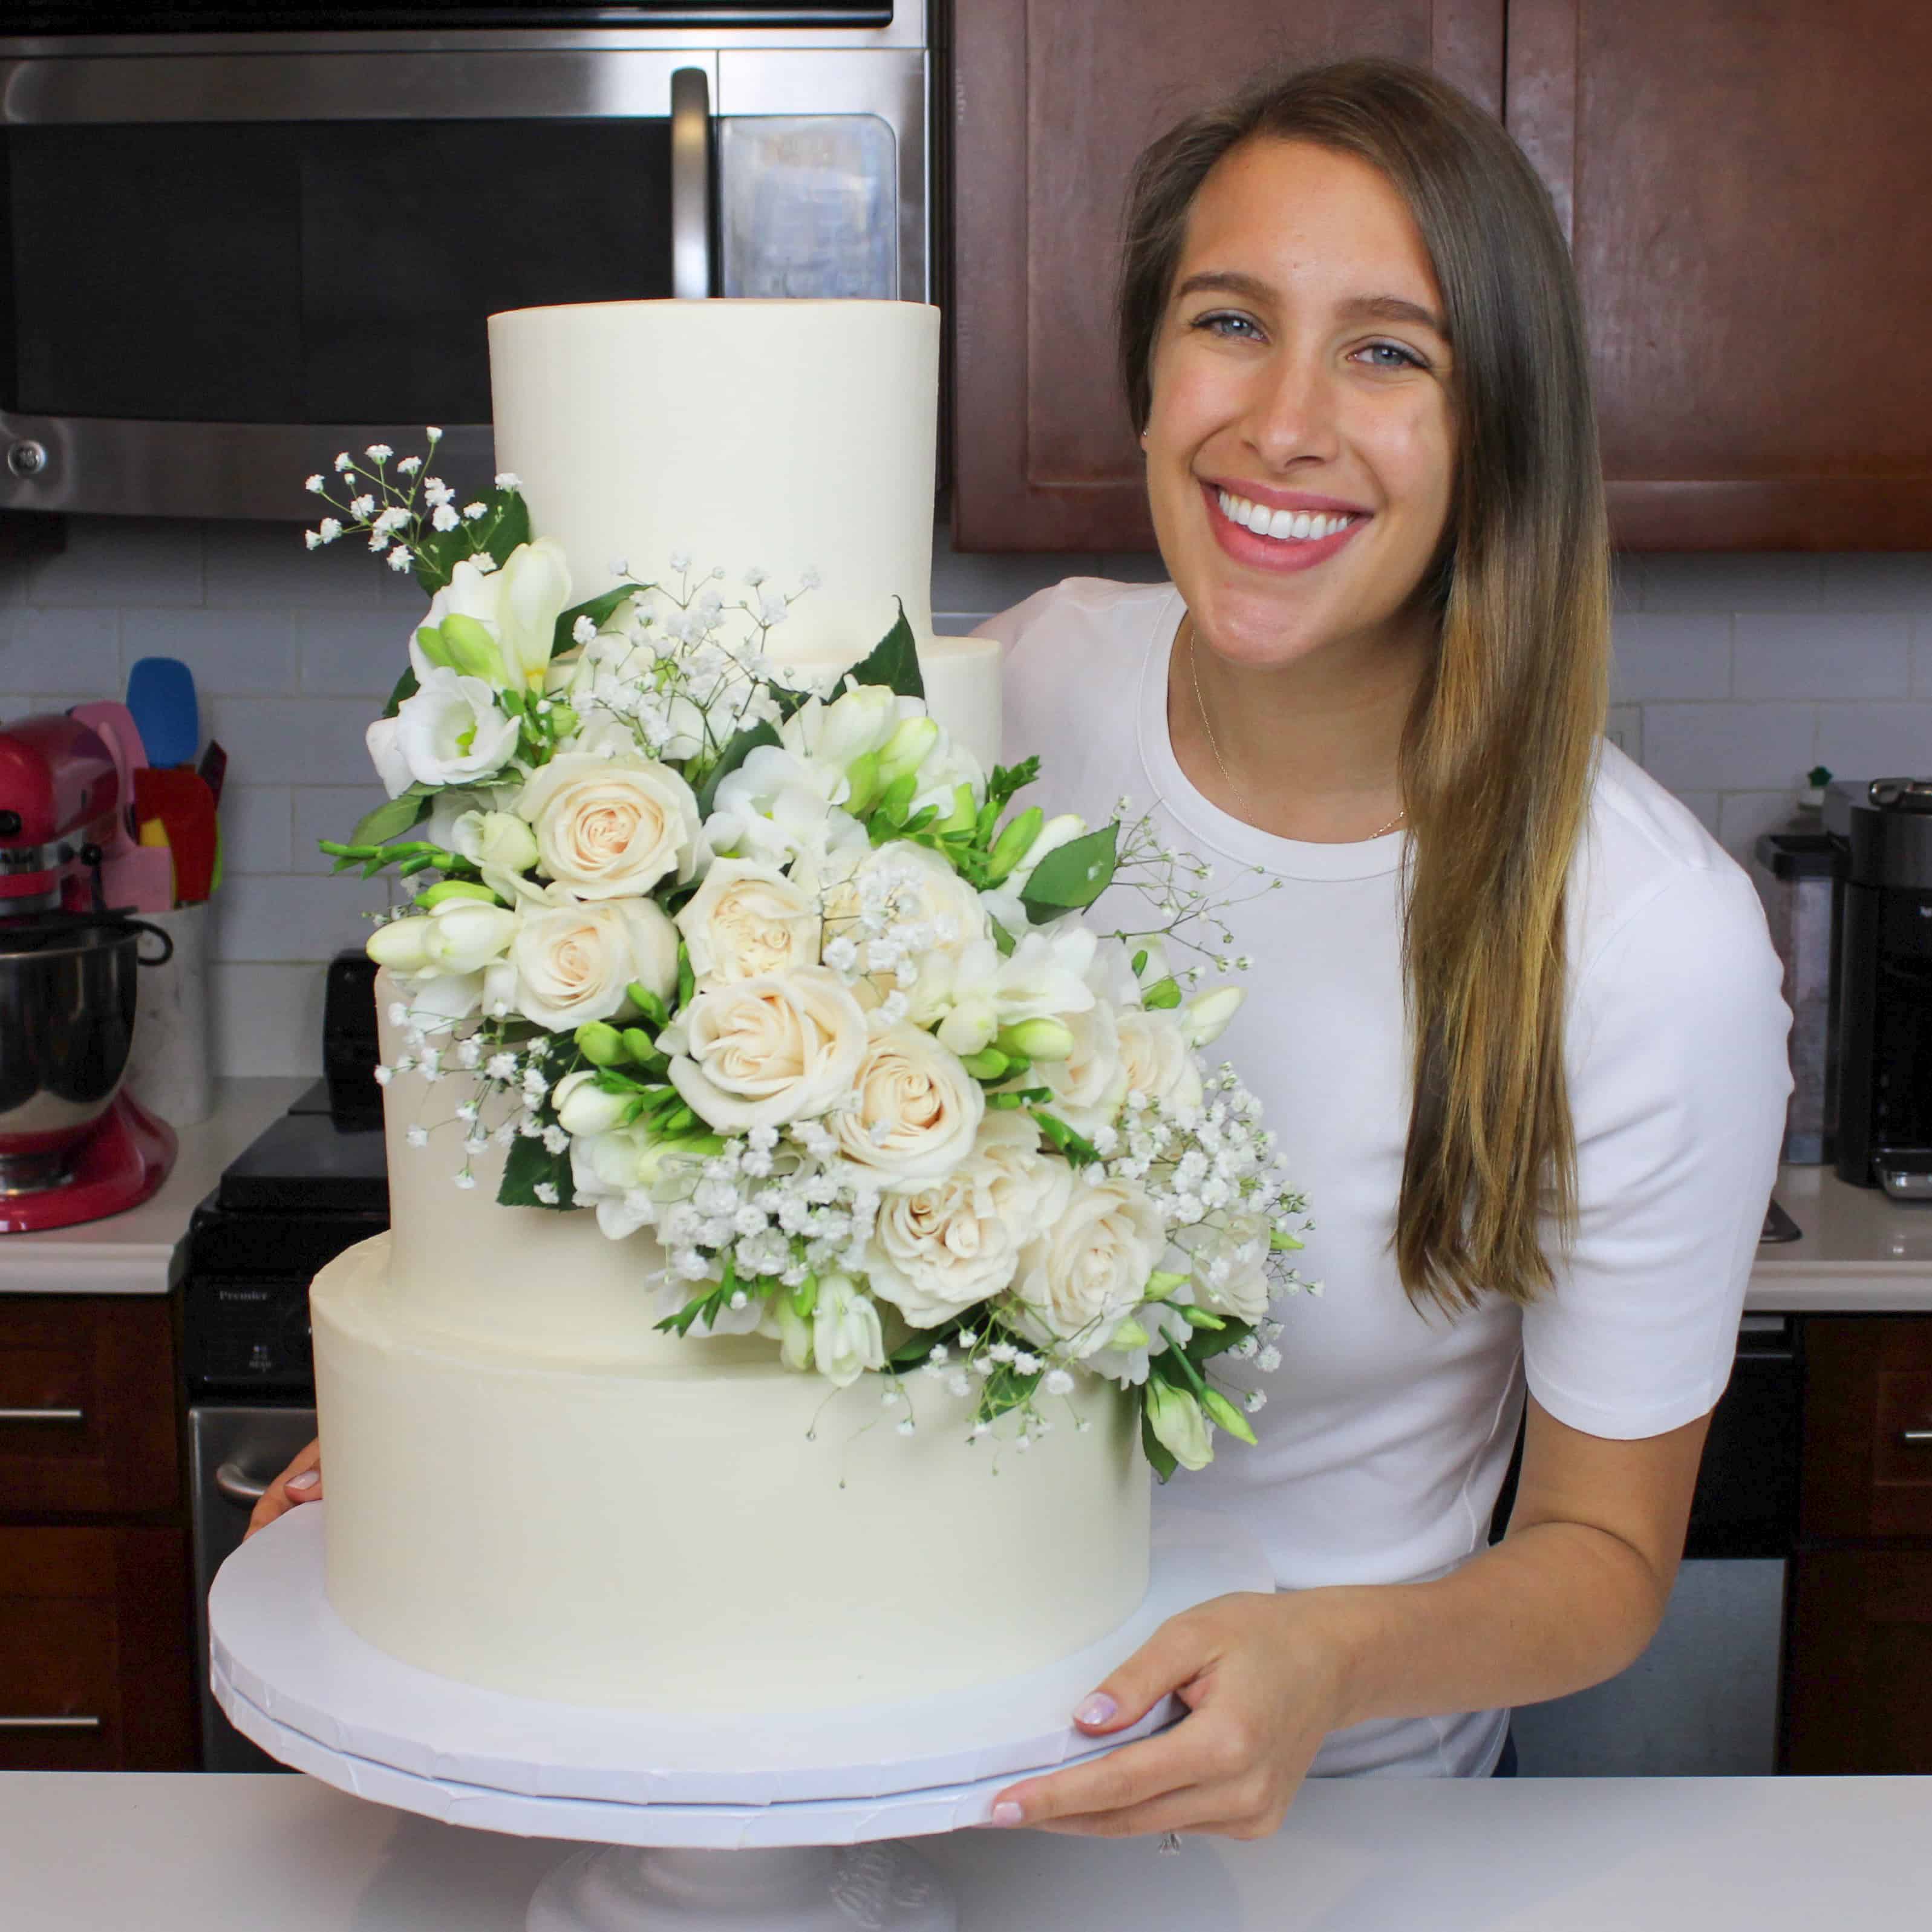 Amish Wedding Cake Recipe » Authentic! » Amish365.com